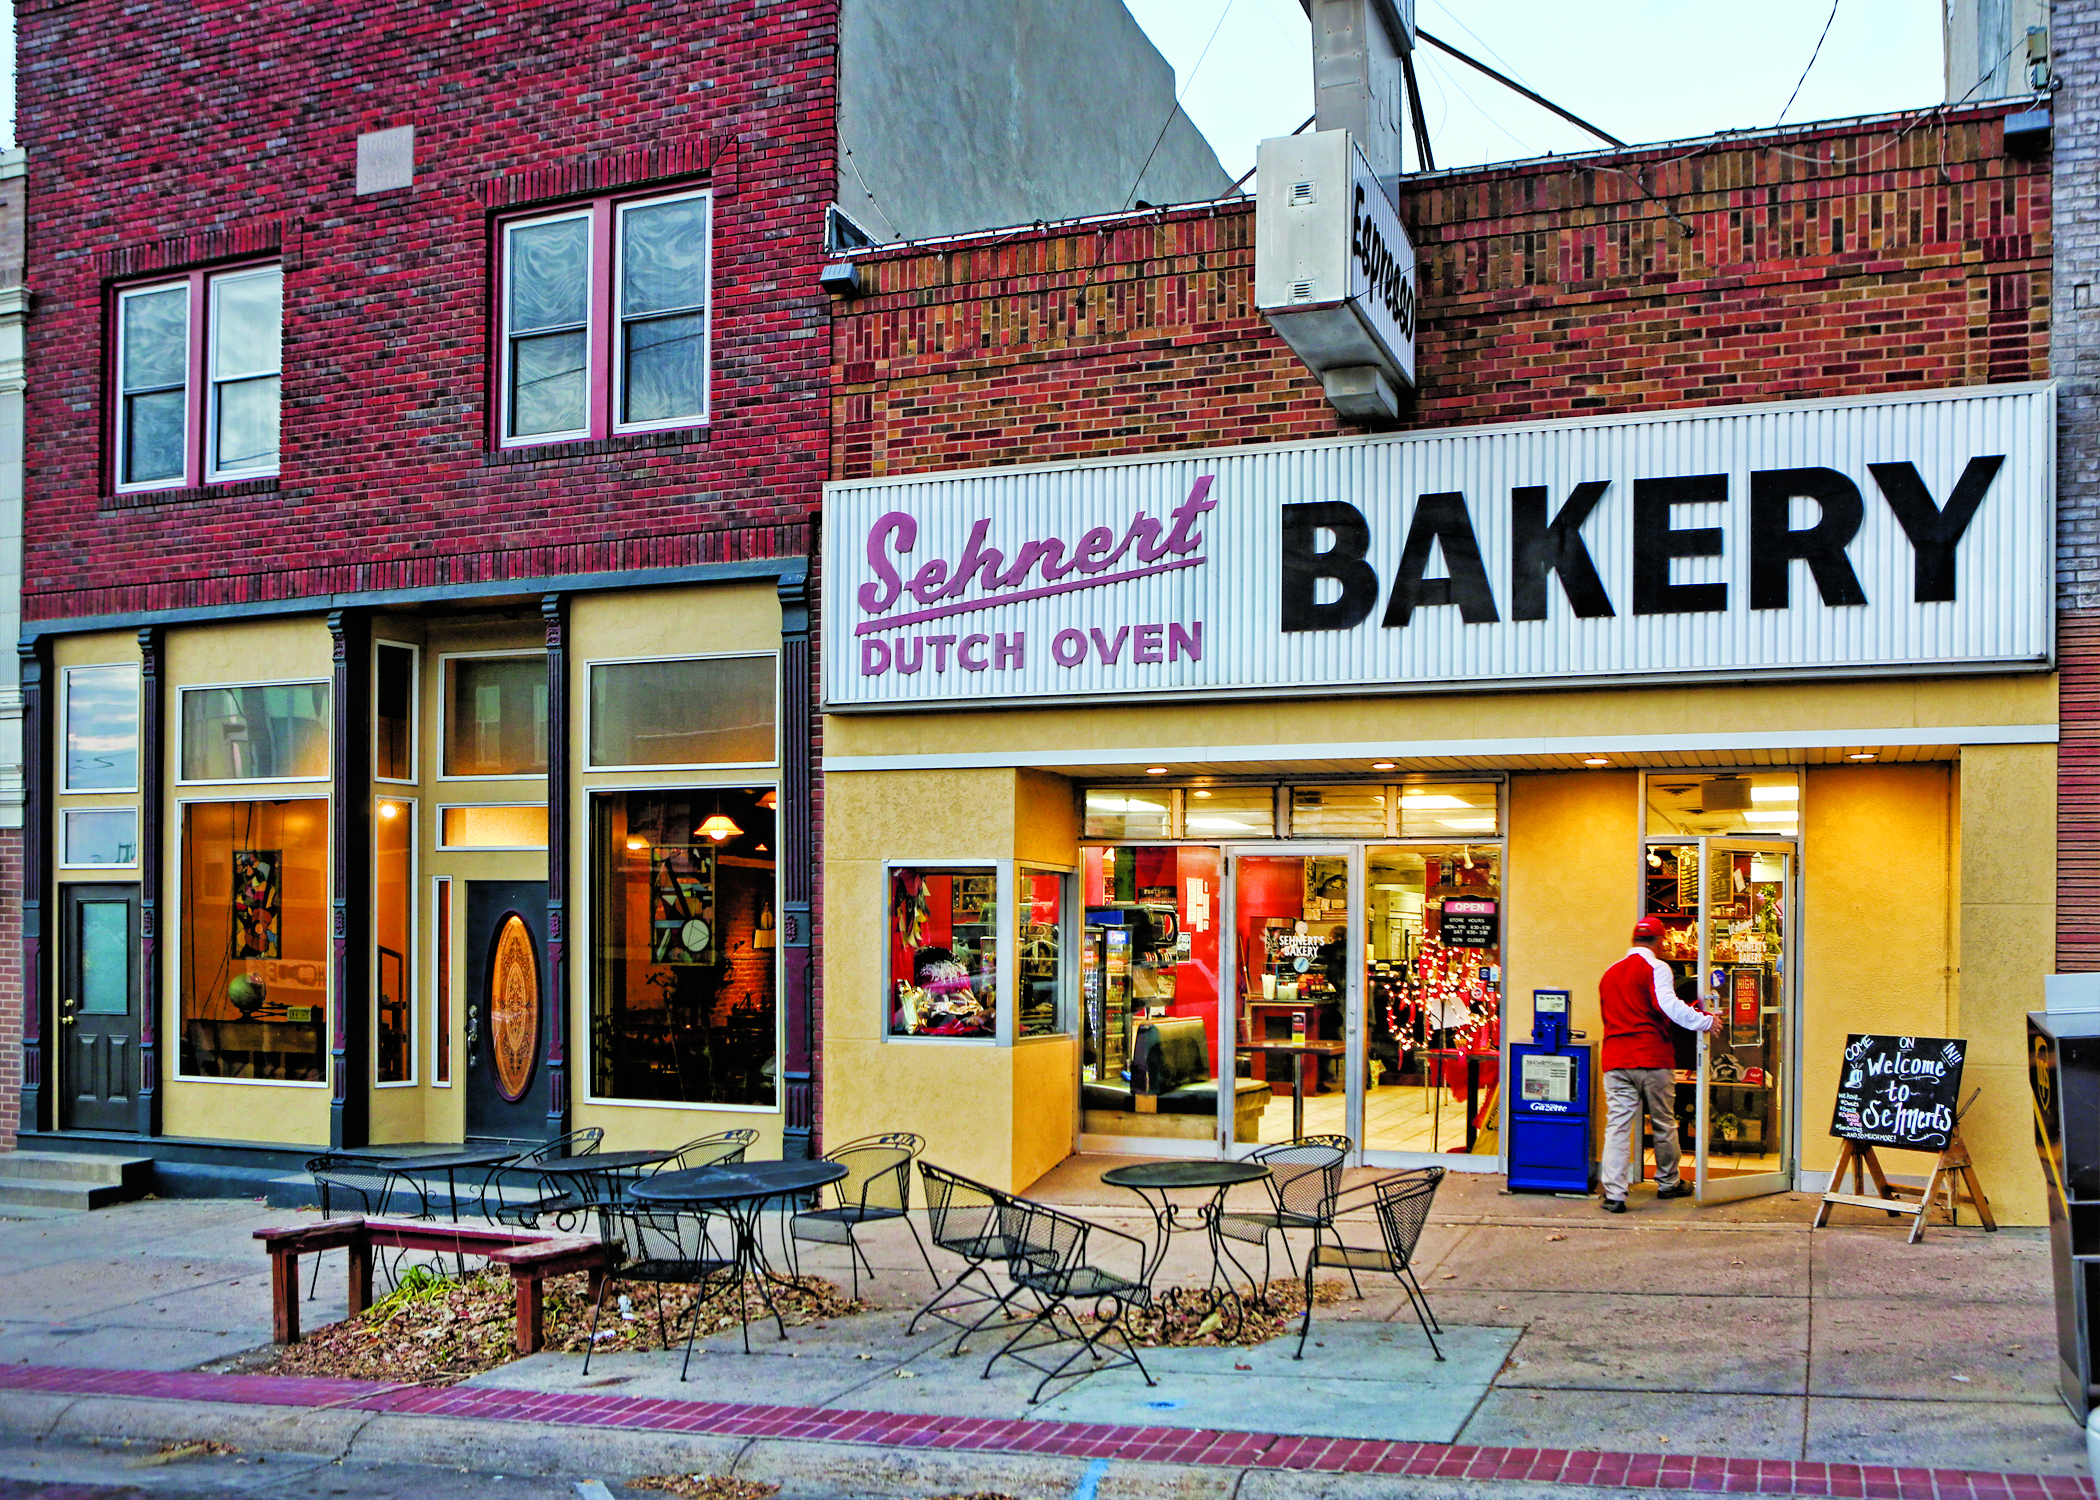 Sehnert's Bakery, McCook